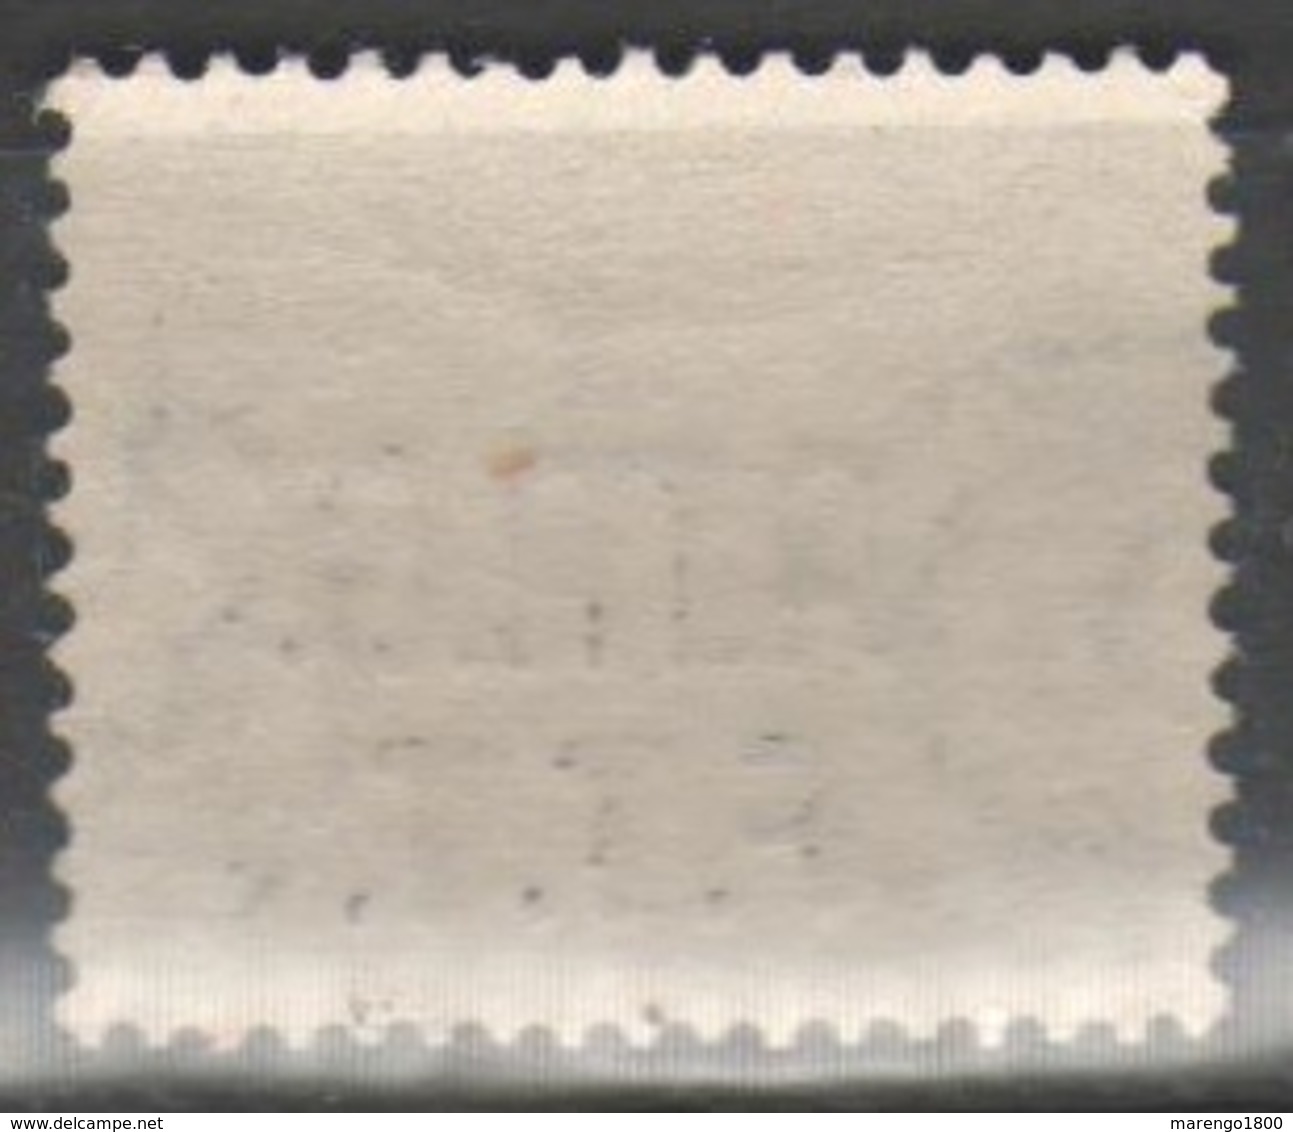 Amg-Ftt 1947-49 - Segnatasse 5 L. ** - Ottima Centratura        (g5429) - Portomarken